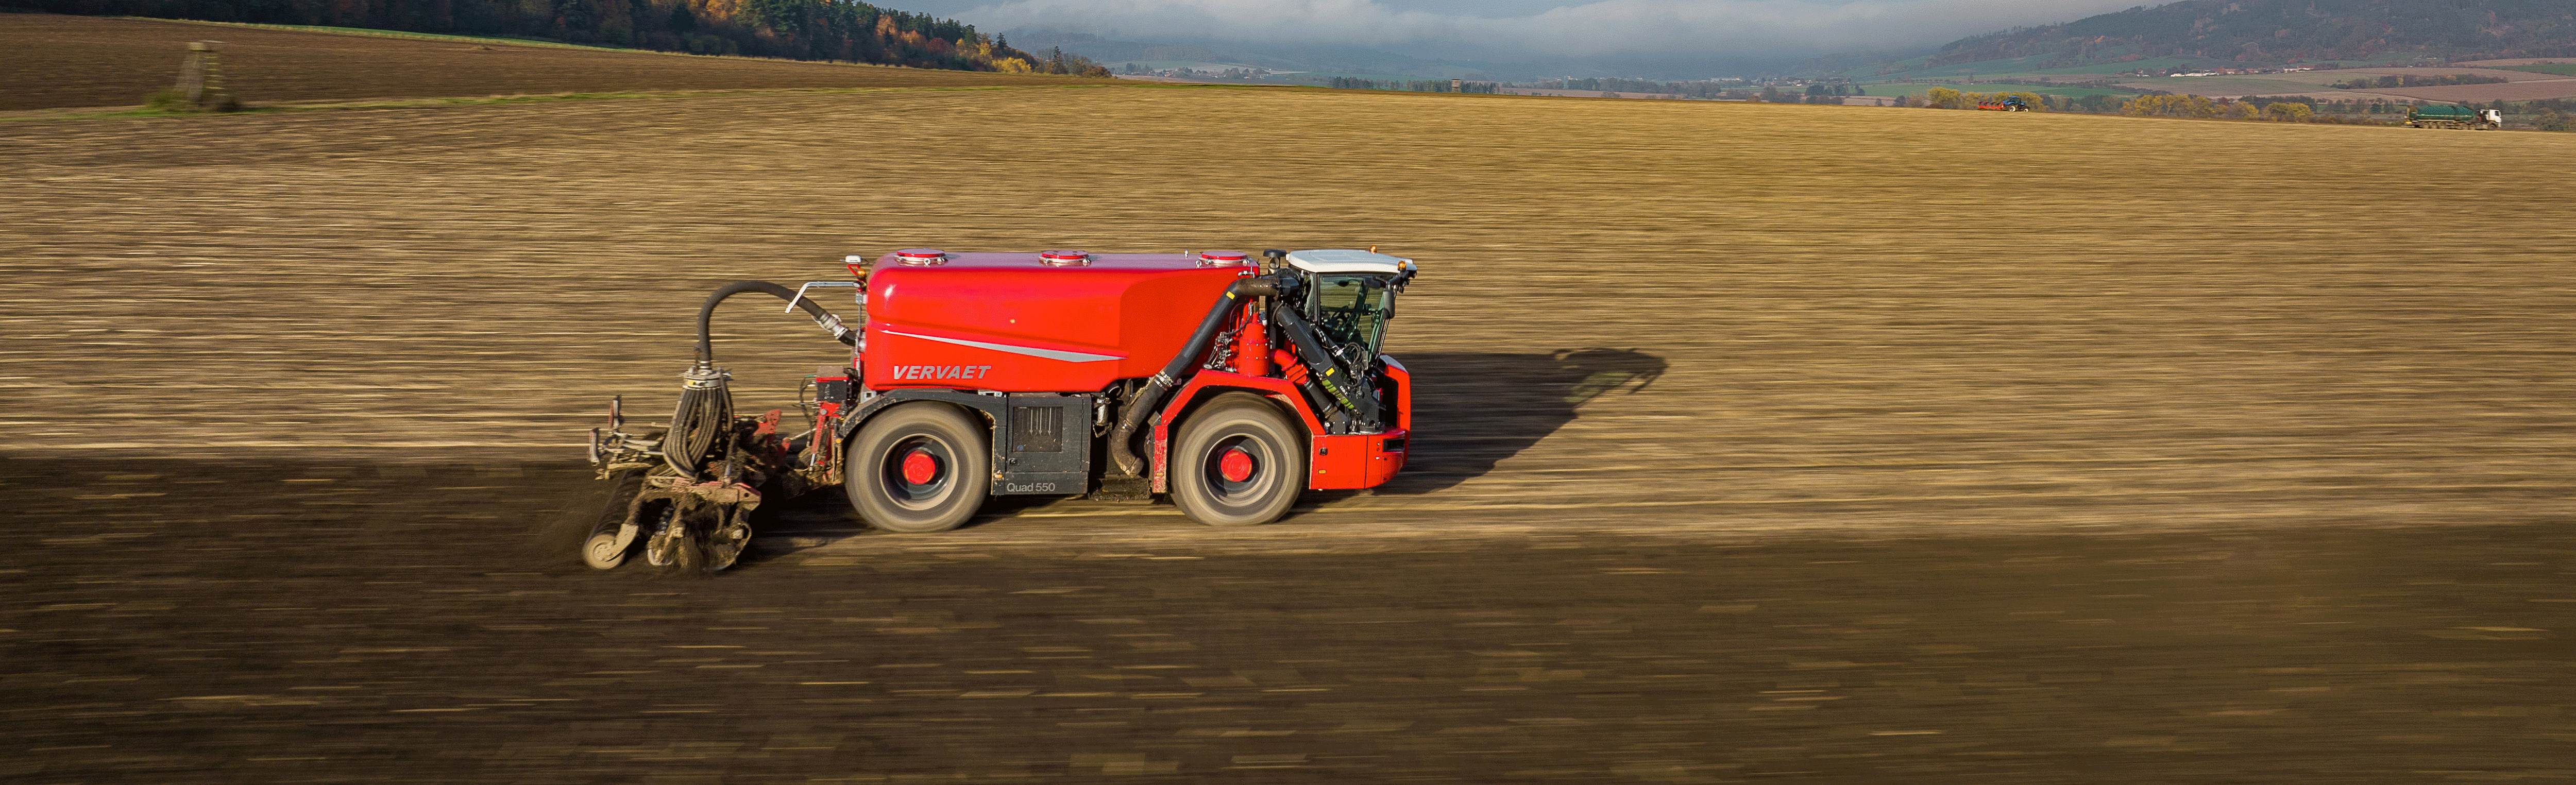 Červený traktor s jednoosou cisternou na poli